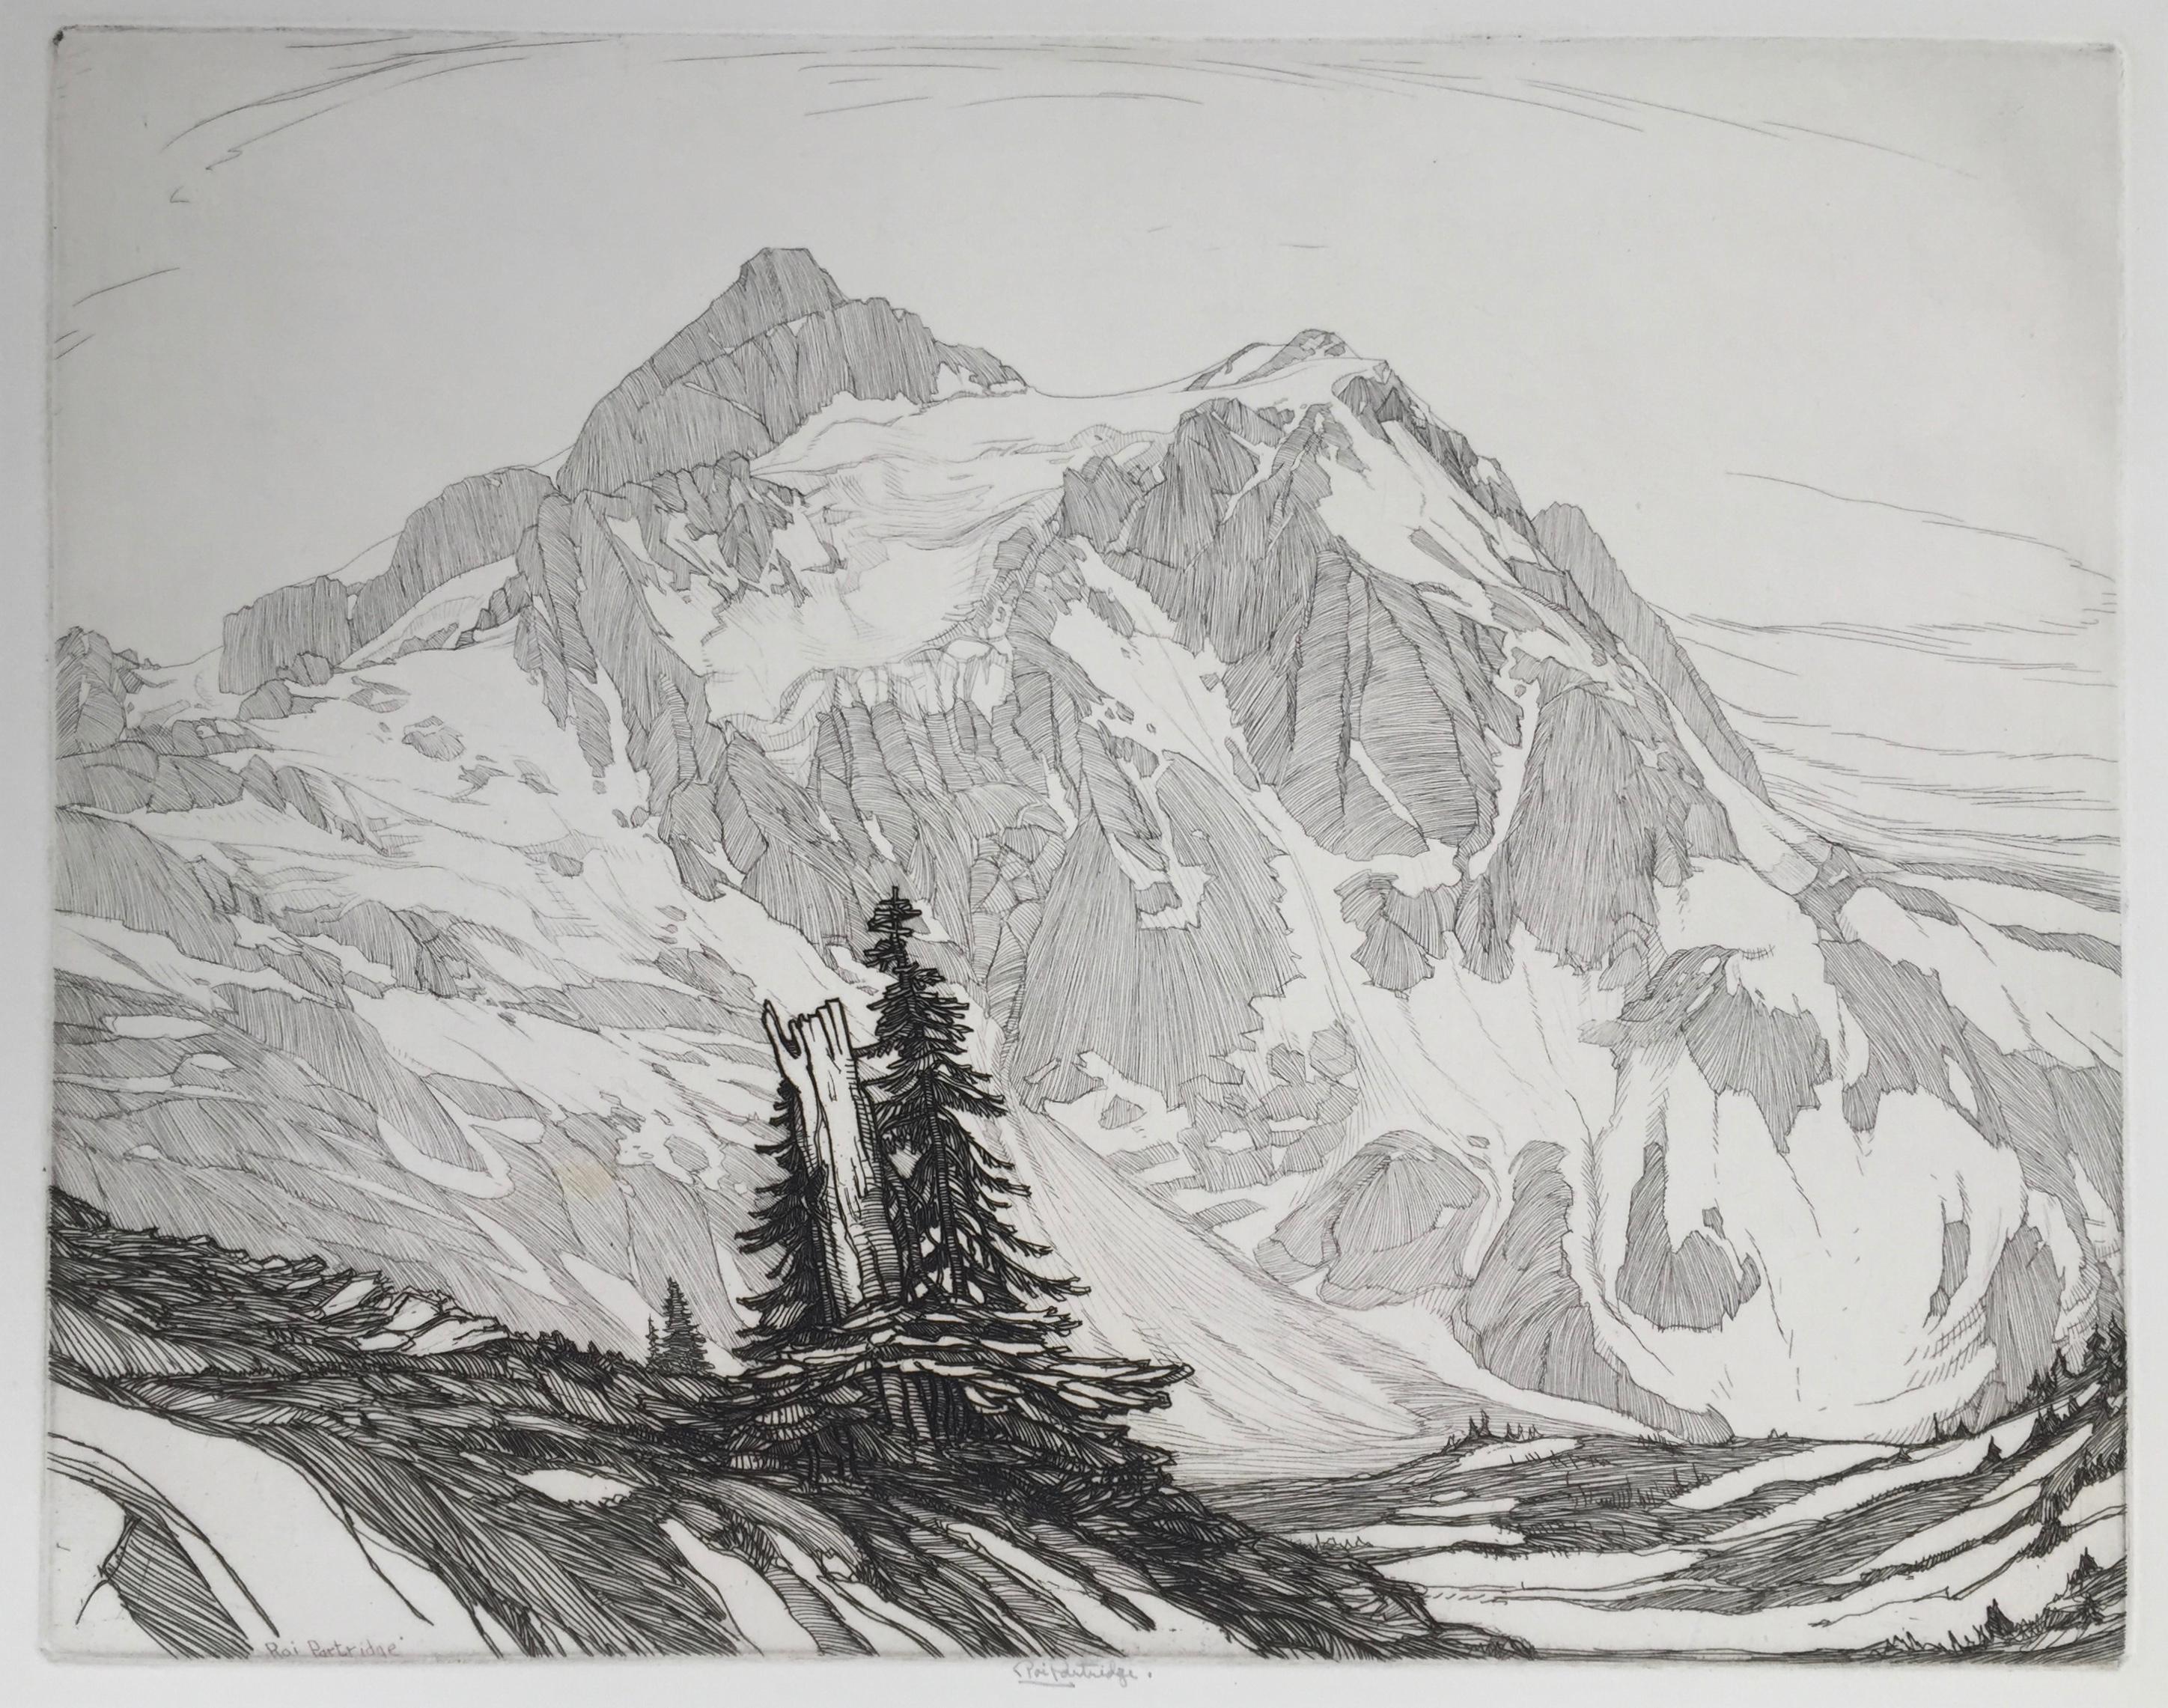 Roi Partridge Landscape Print - Avalanche Land